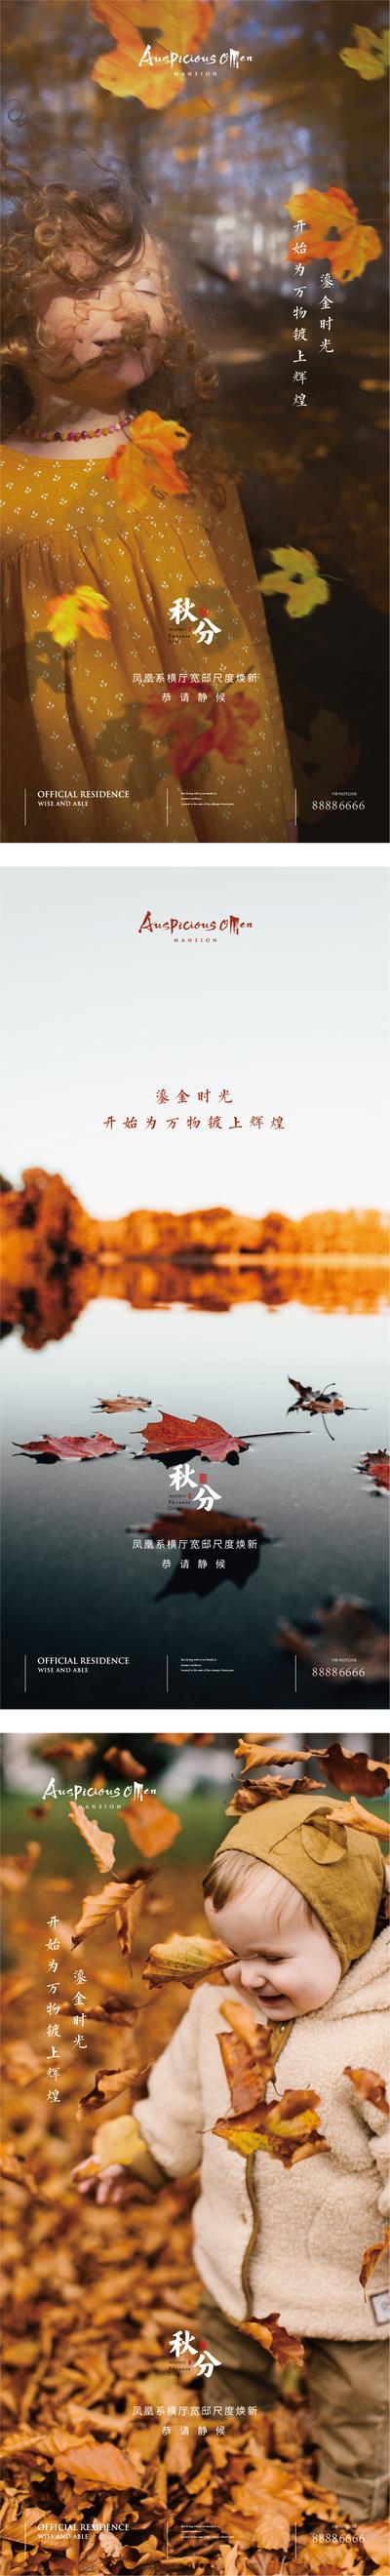 南门网 海报 二十四节气 秋分 落叶 秋意 系列